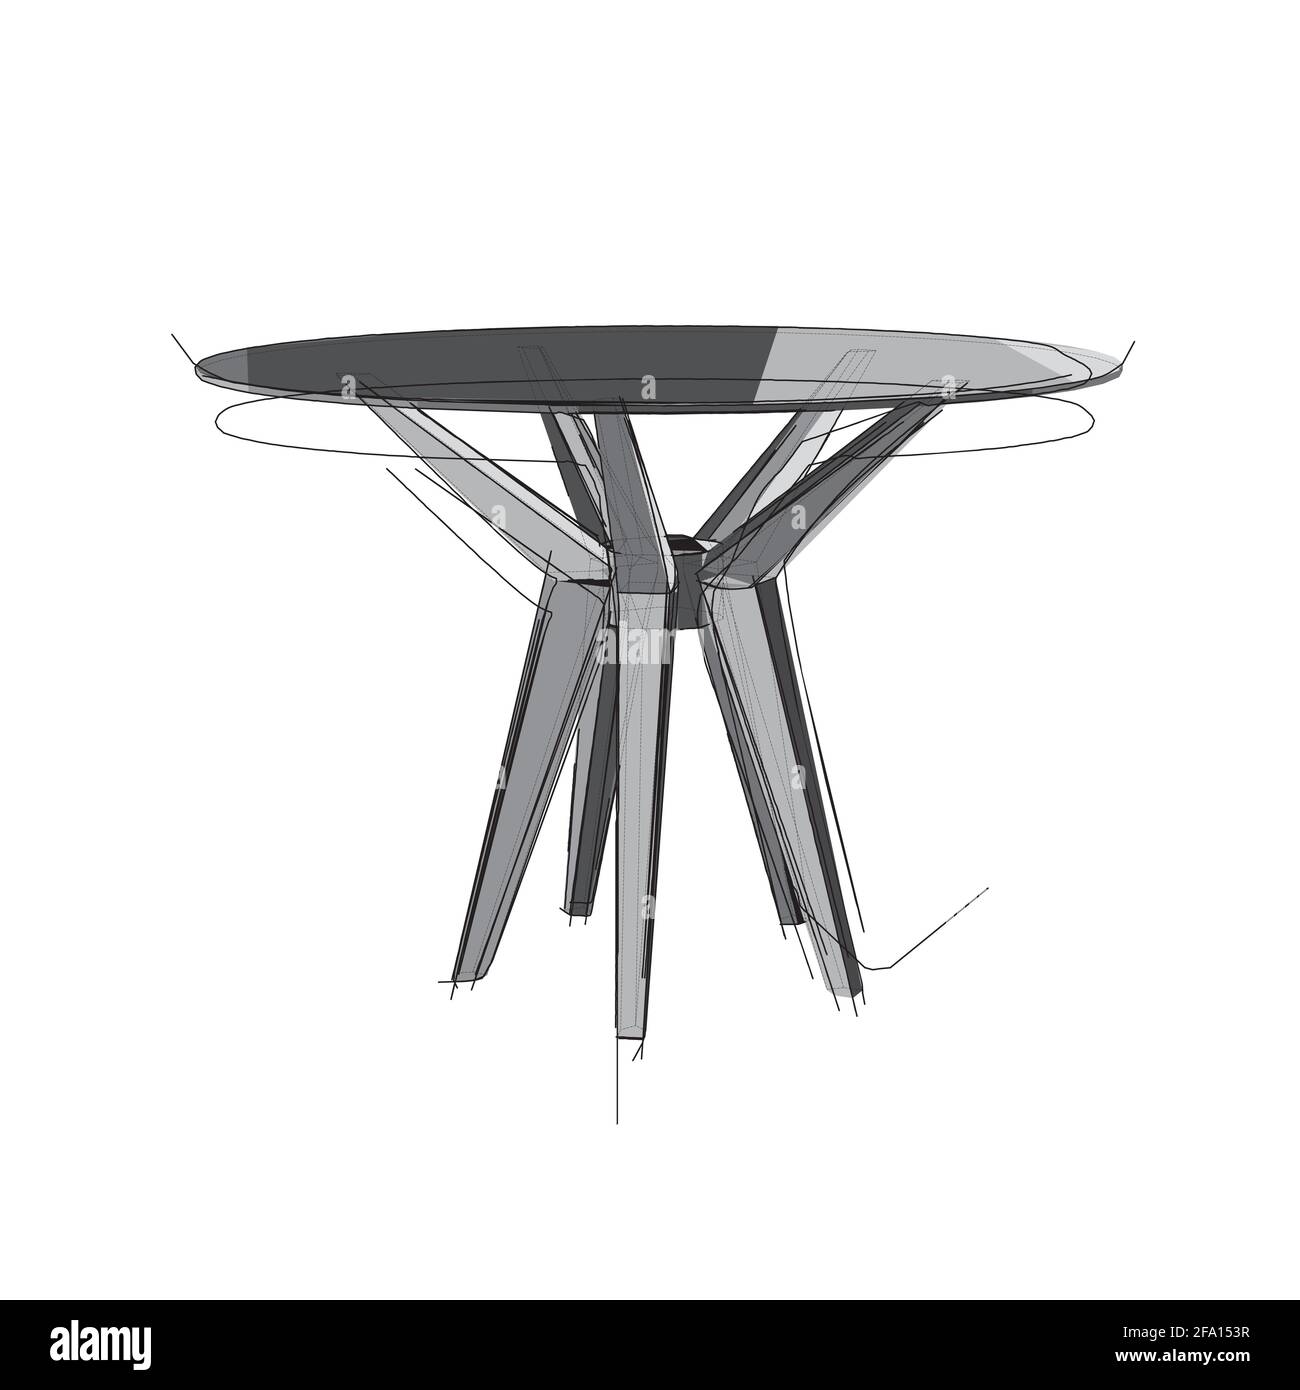 Dibujo técnico de una mesa redonda de restaurante de estilo arquitectónico. Ilustración vectorial esquemática de mesa de cocina comercial con tapa de cristal en w Ilustración del Vector